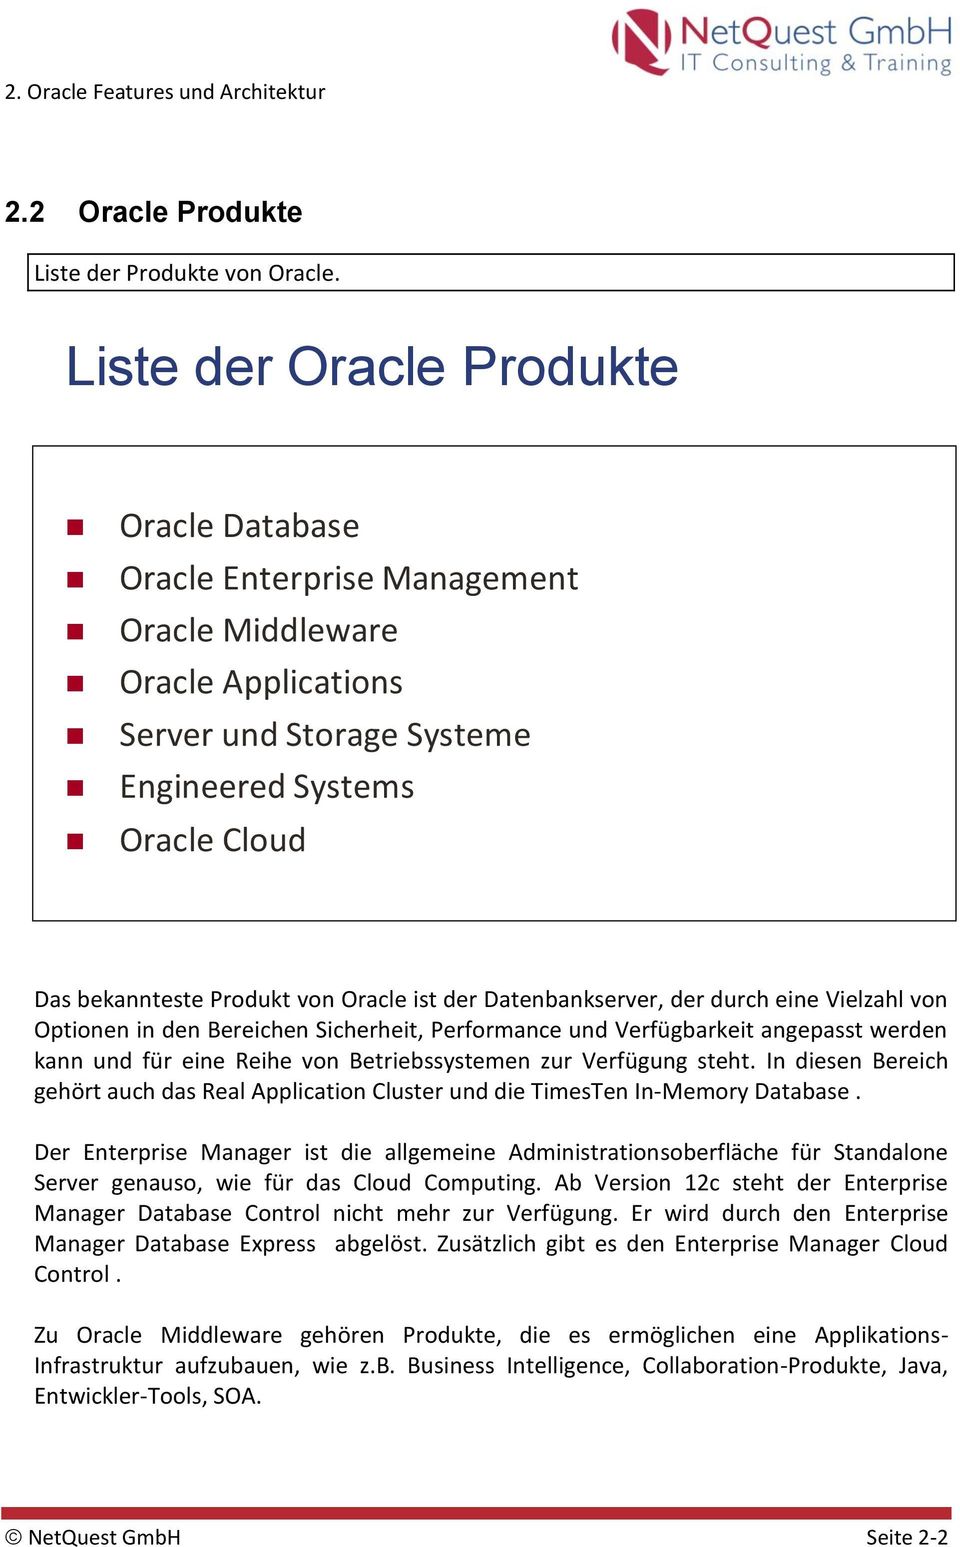 Oracle ist der Datenbankserver, der durch eine Vielzahl von Optionen in den Bereichen Sicherheit, Performance und Verfügbarkeit angepasst werden kann und für eine Reihe von Betriebssystemen zur